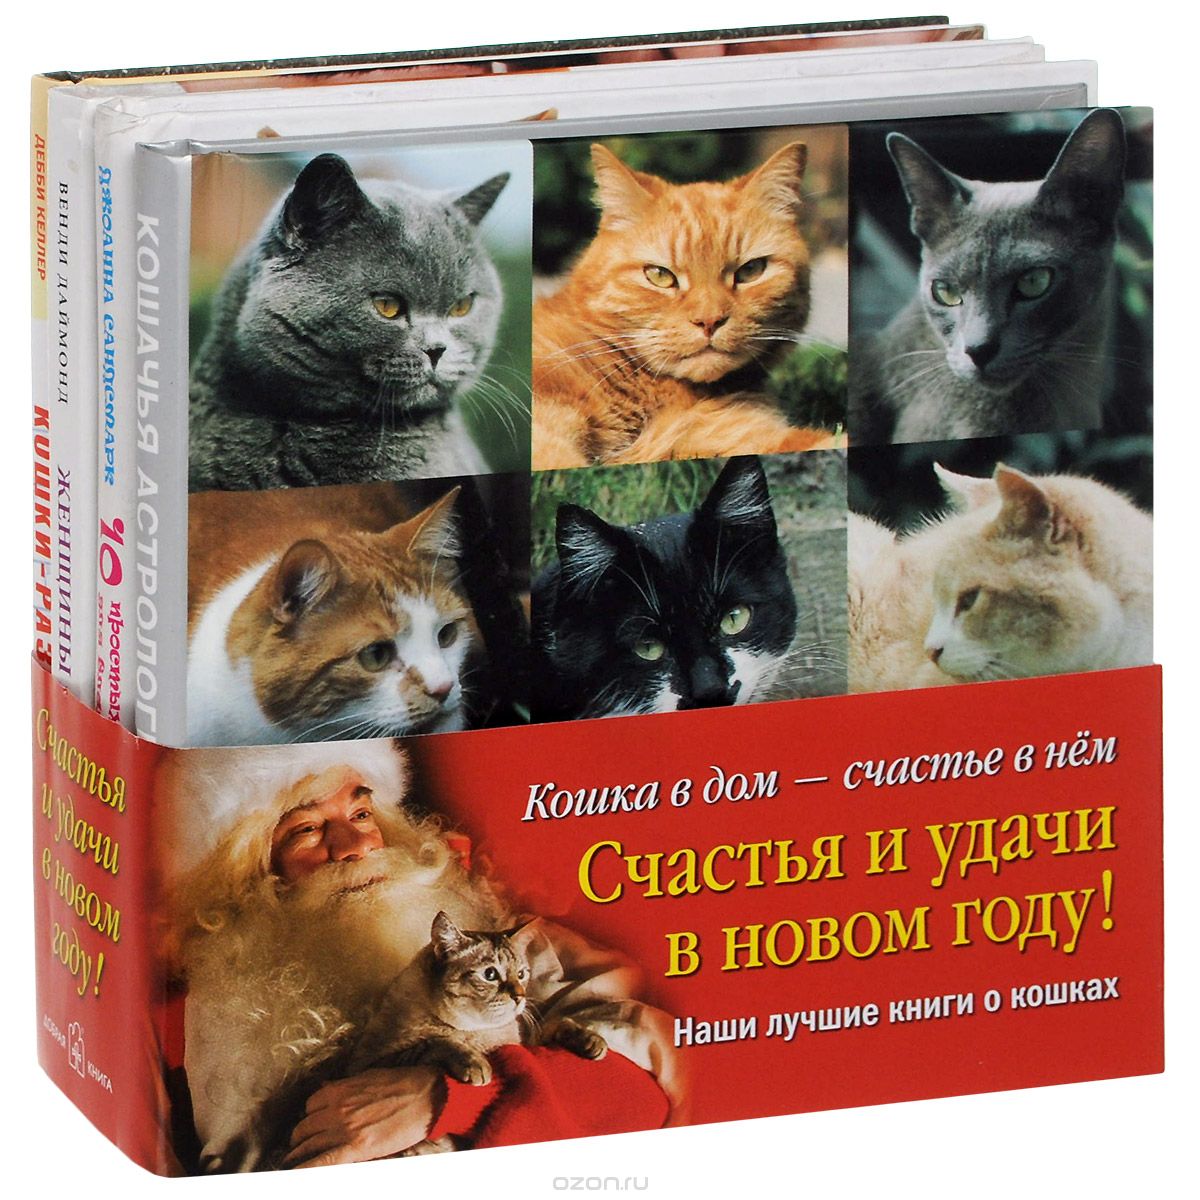 Скачать книгу "Кошка в дом - счастье в нем (комплект из 4 книг), Джоанна Сандсмарк, Венди Даймонд, Пэтти Гринолл, Кэт Джейвор, Дэбби Келлер"